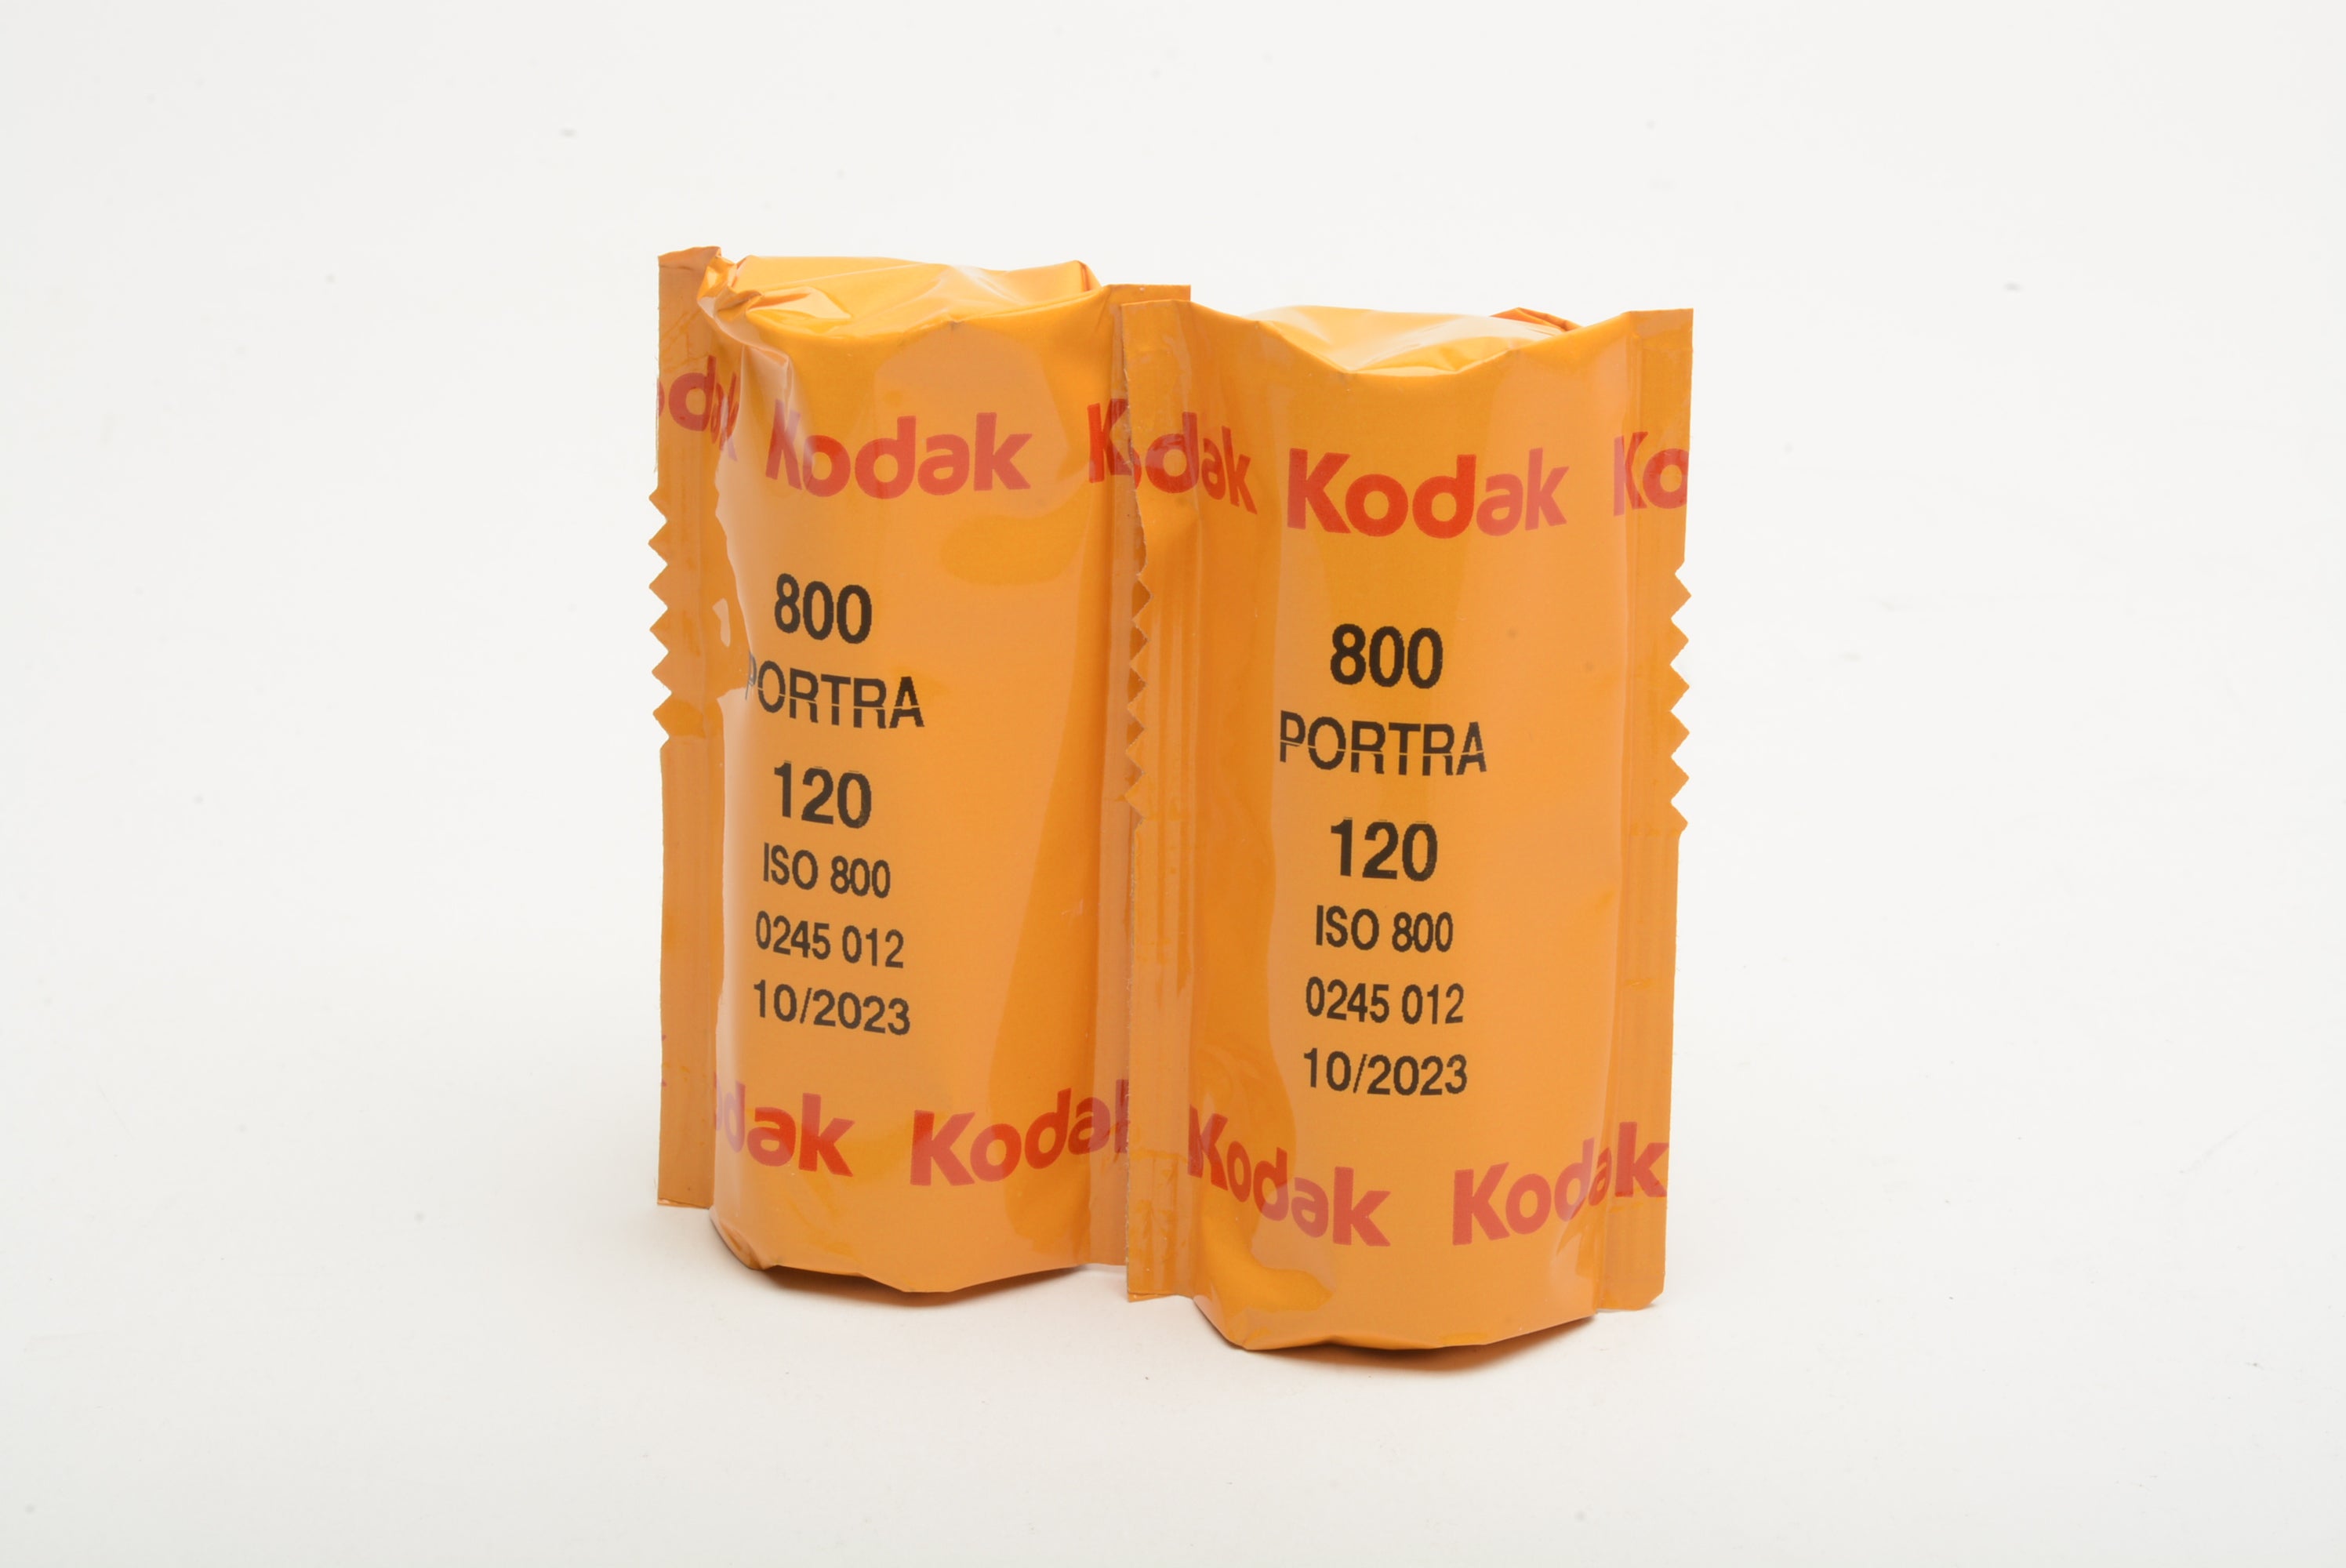 2X Kodak Portra 800 120 Film Expires 10/2023 – RecycledPhoto